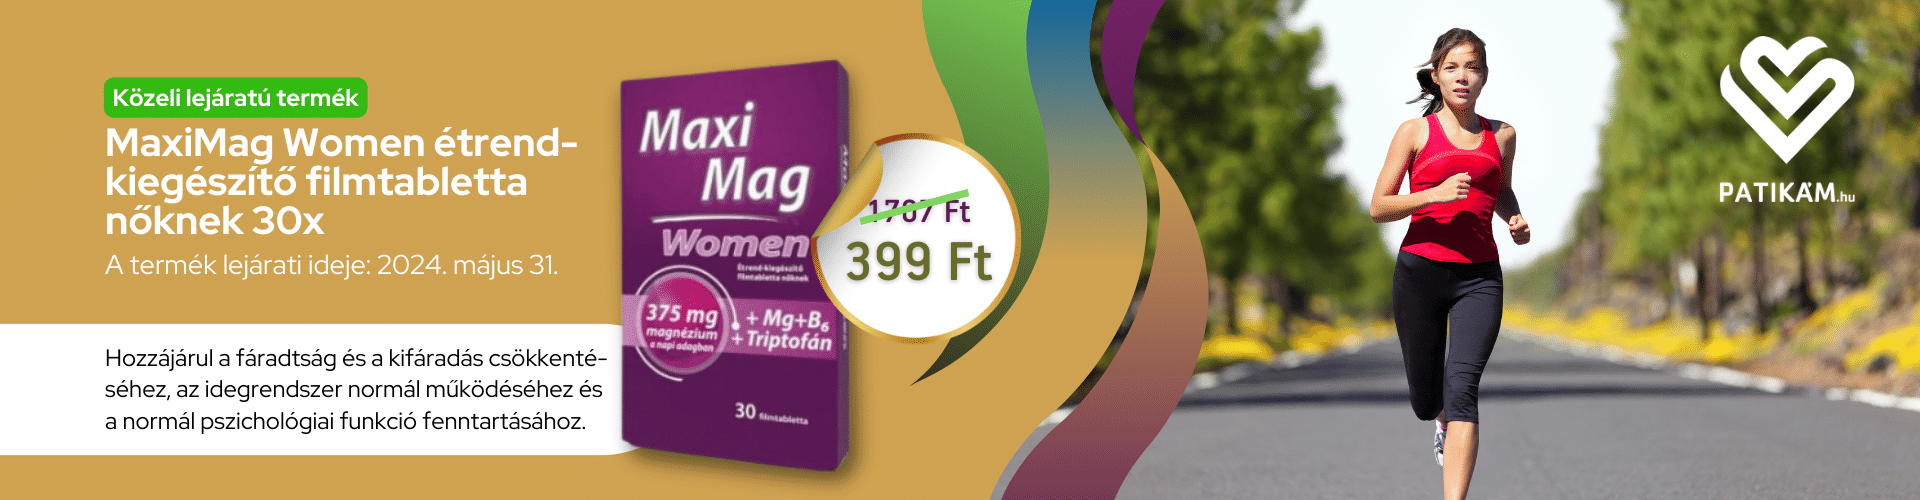 MaxiMag máj. 31. 399